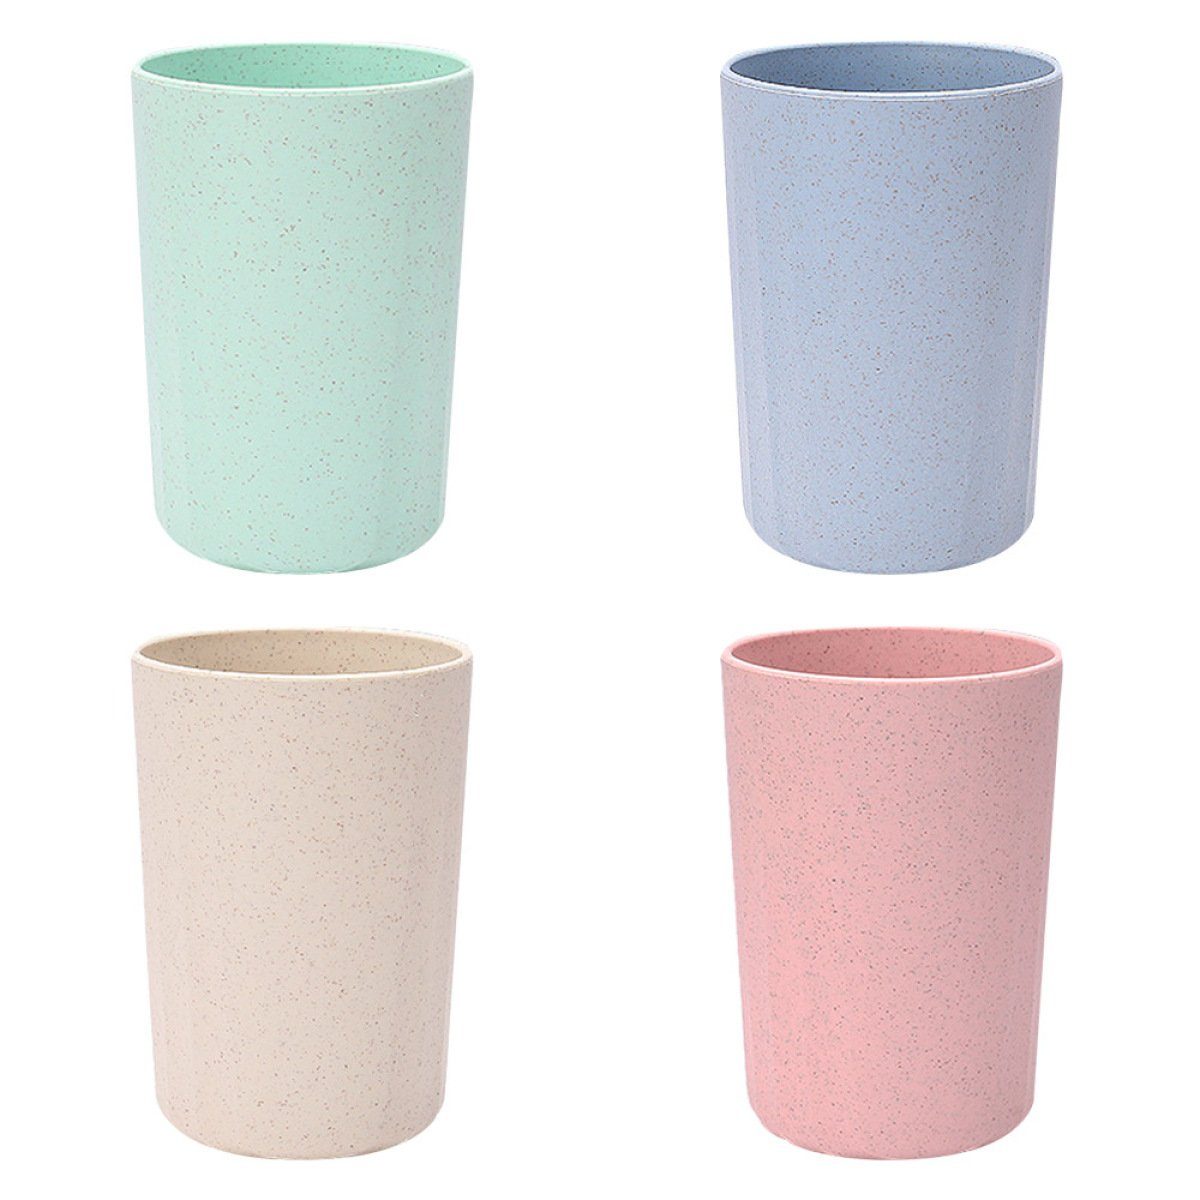 Juoungle Tasse 4 Stück Weizen Strohhalm Tassen, wiederverwendbare Kunststoffbecher Blau, Grün, Pink, Beige